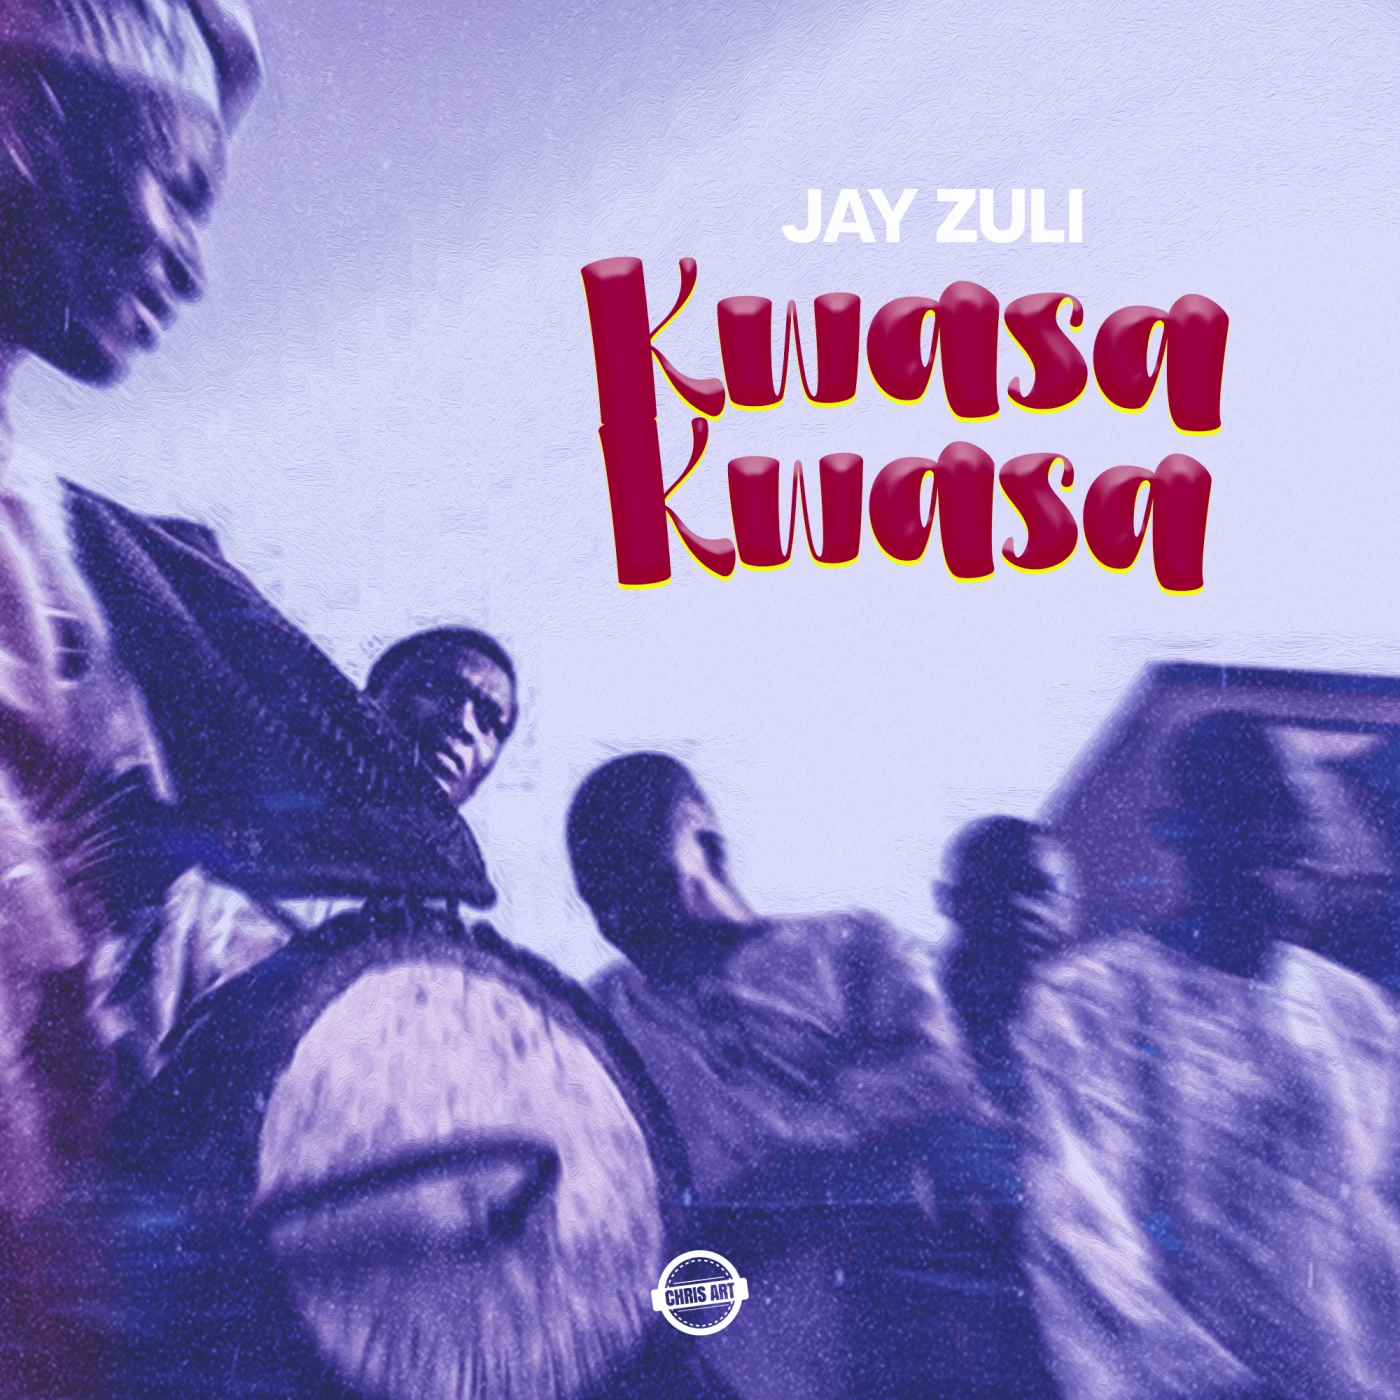 3-kwasakwasa-jay-zuli-Just Malawi Music